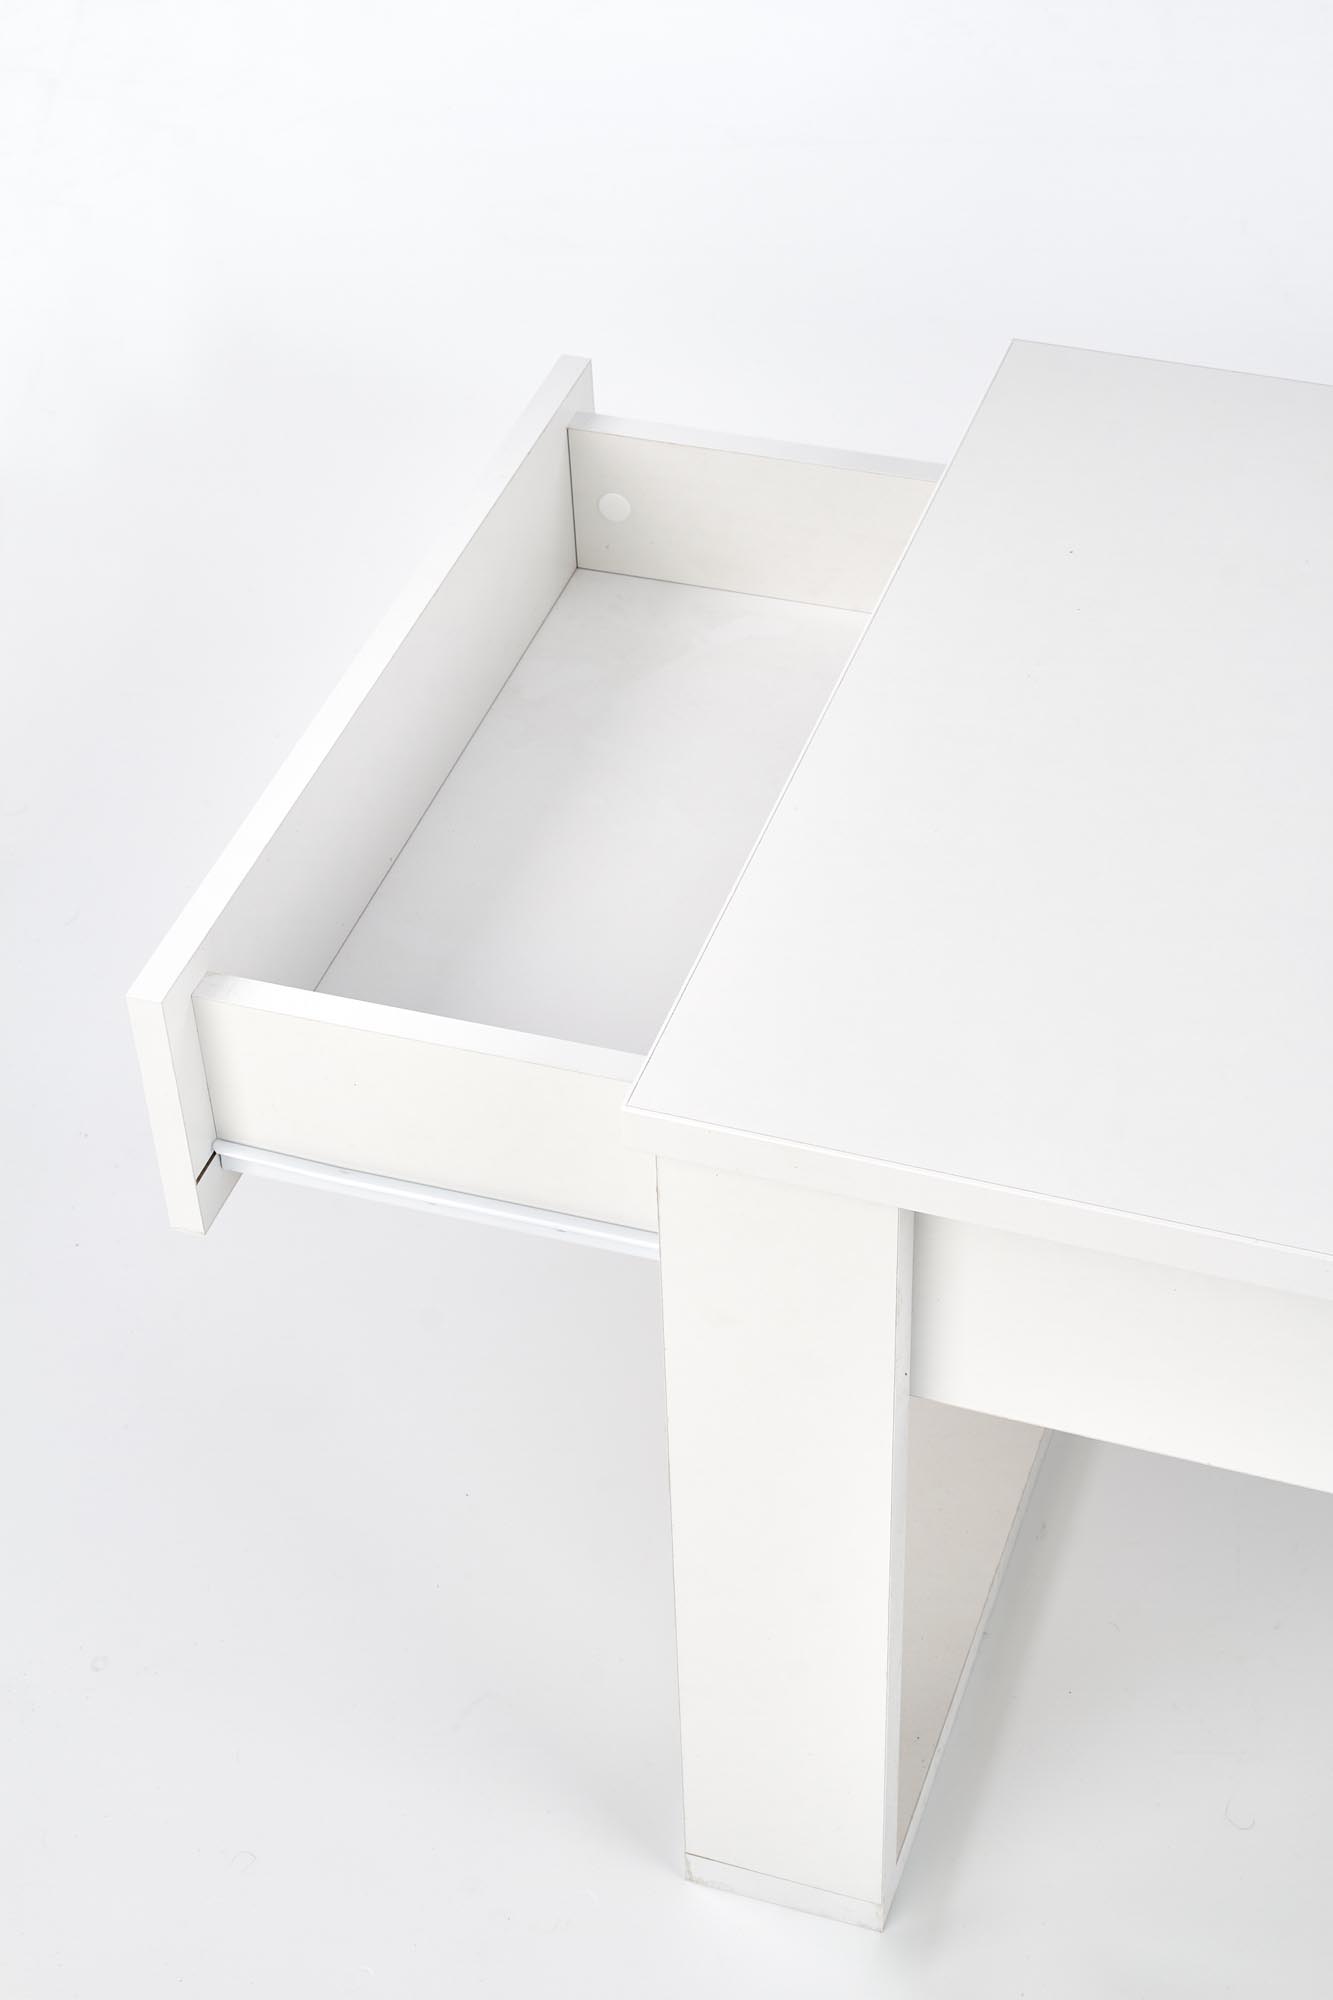 NEA Konferenční stolek Barva Bílá nea Konferenční stolek Barva Bílá